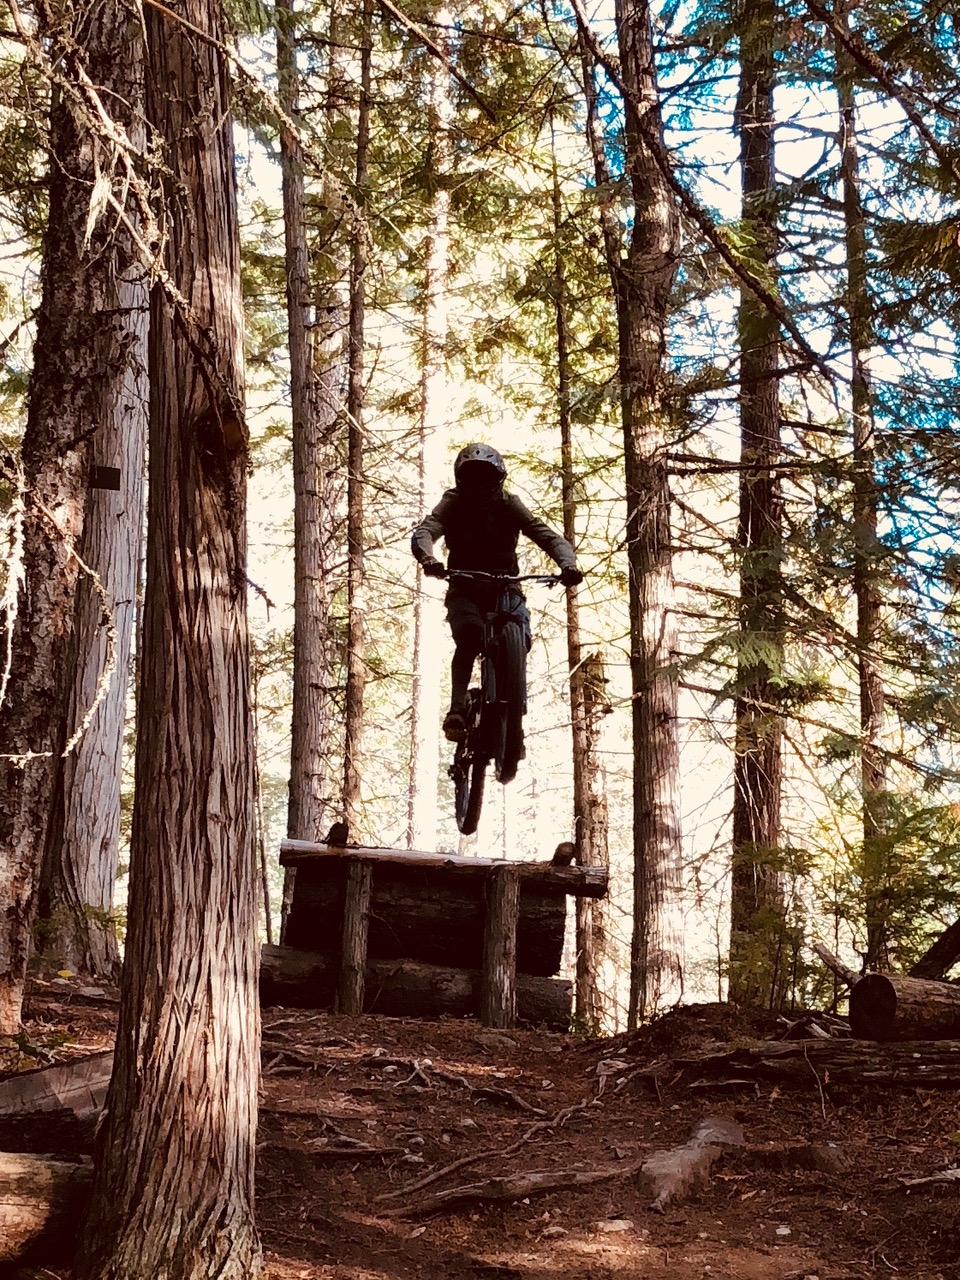 mountain biker airs off wooden jump amongst woodland